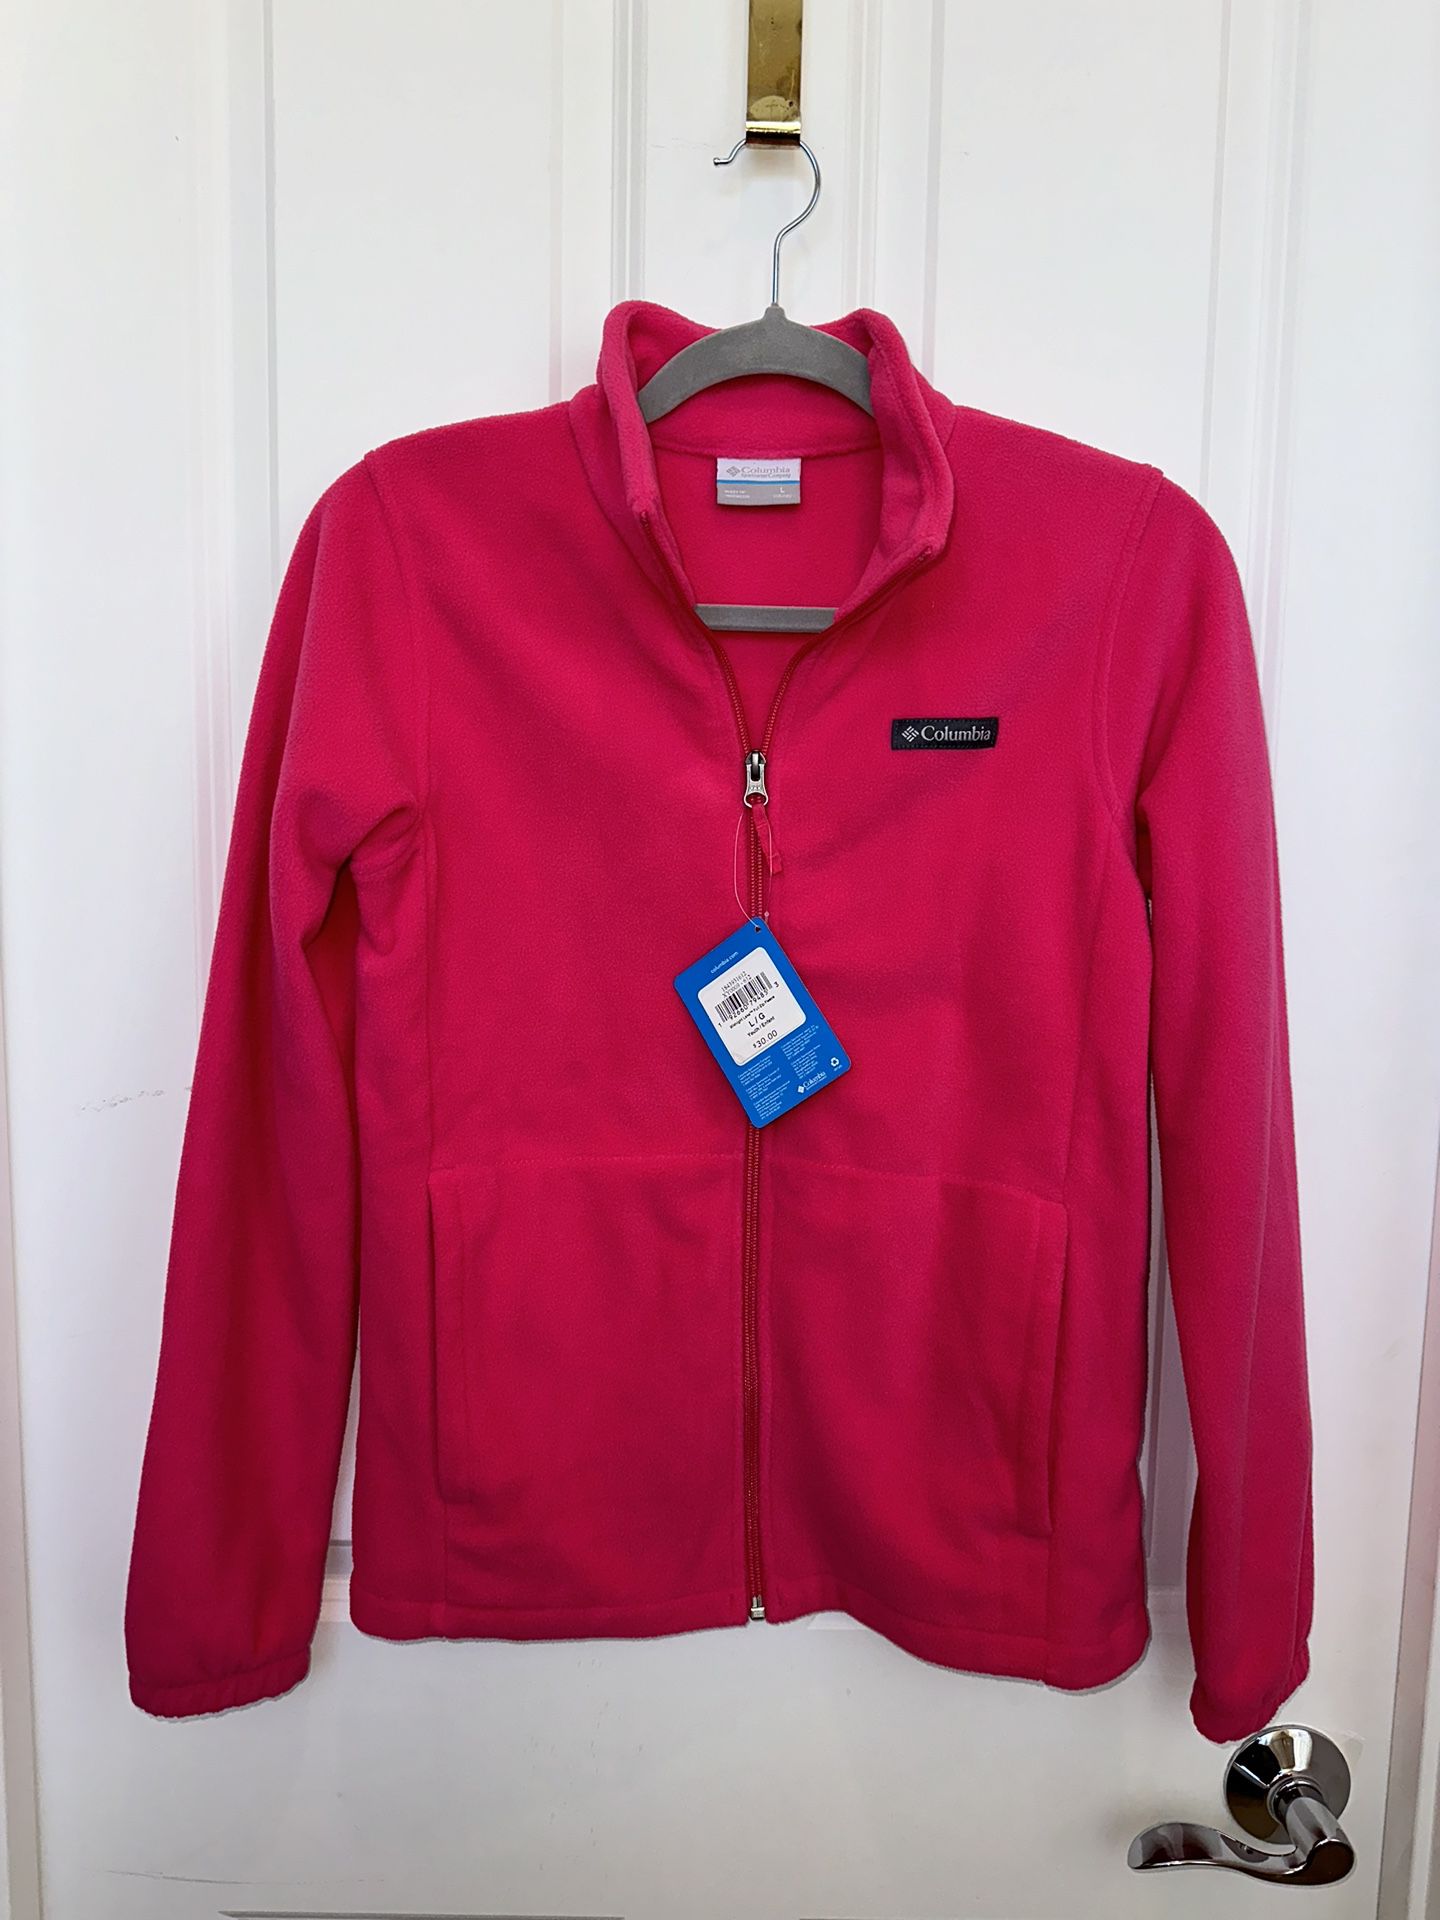 Columbia fleece jacket, girls size L(14/16)